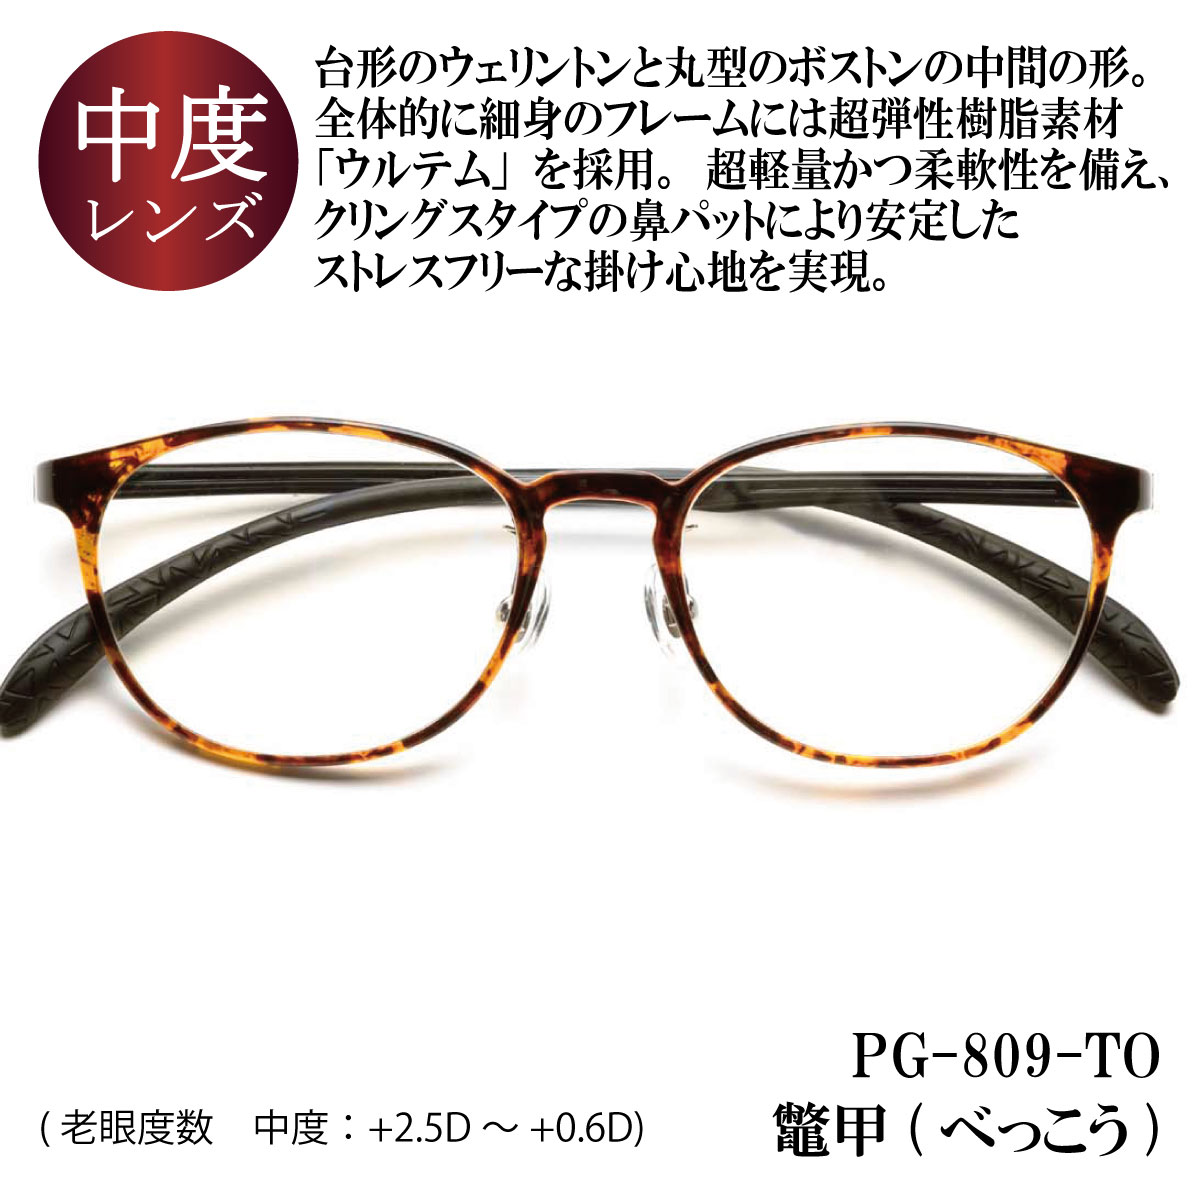 ピントグラス プレゼント付き 中度 レンズ 度数 +0.6〜+2.5D 老眼鏡 シニアグラス メガネ 累進レンズ PINT GLASSES 視力補正  ピントが合う PG-809-TO